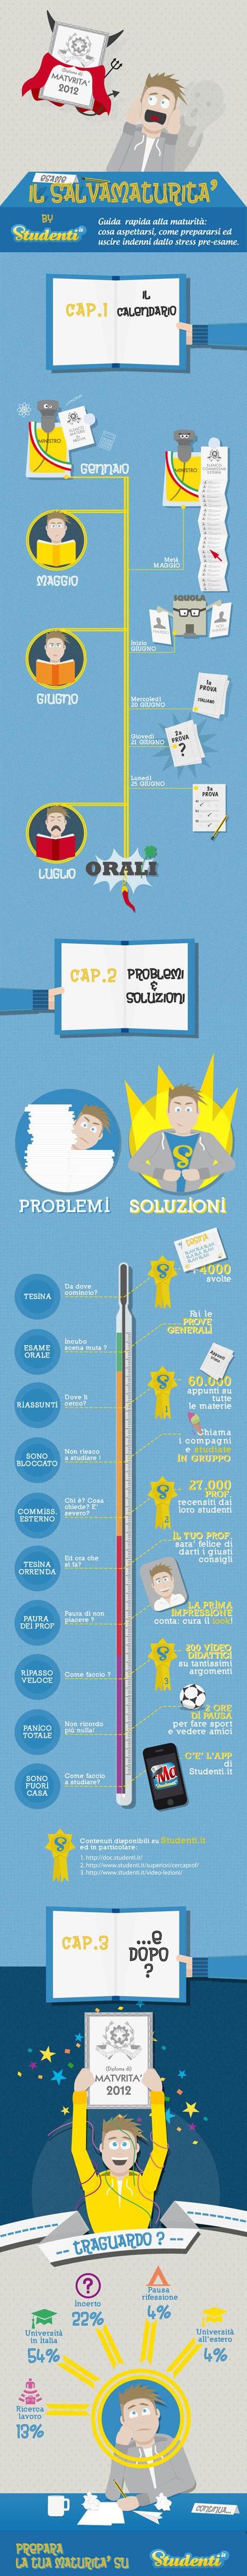 infografica_maturita_2012